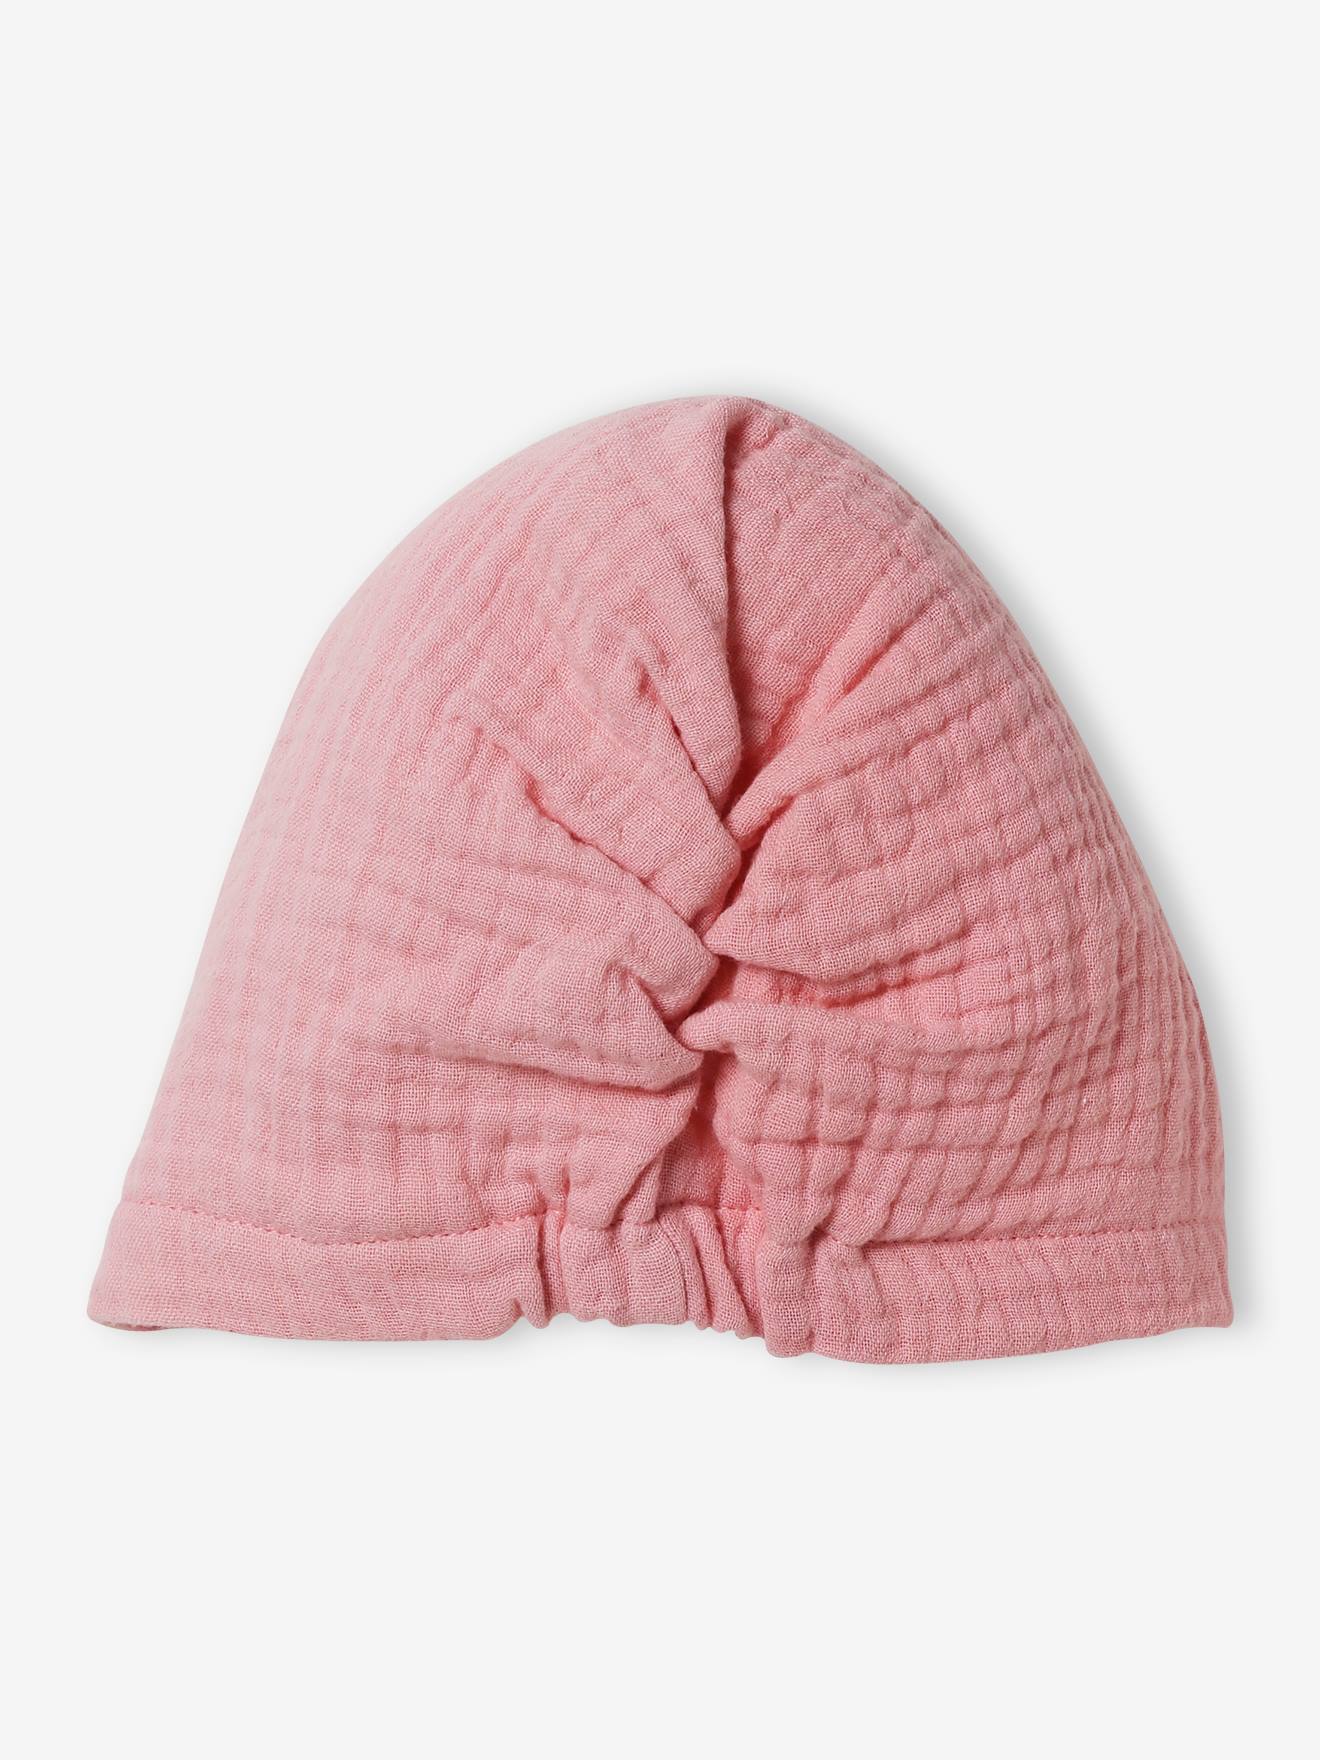 Ensemble bonnet + moufles + foulard + sac bébé fille en maille imprimée  personnalisable - bois de rose, Bébé